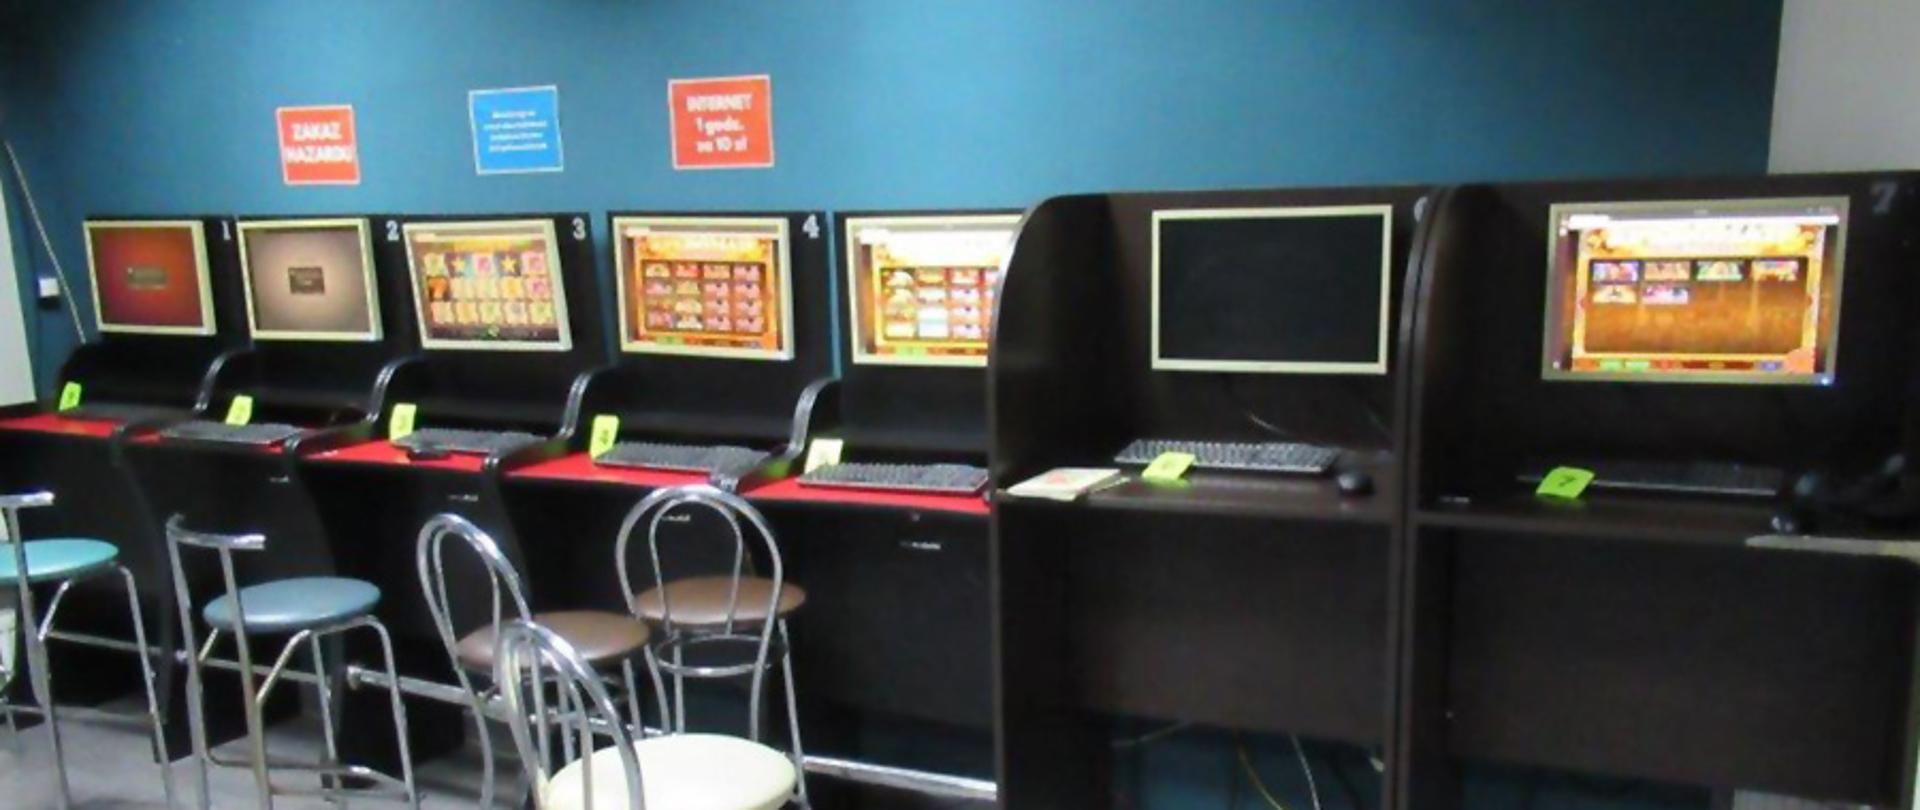 Automaty do gier hazardowych w pomieszczeniu.